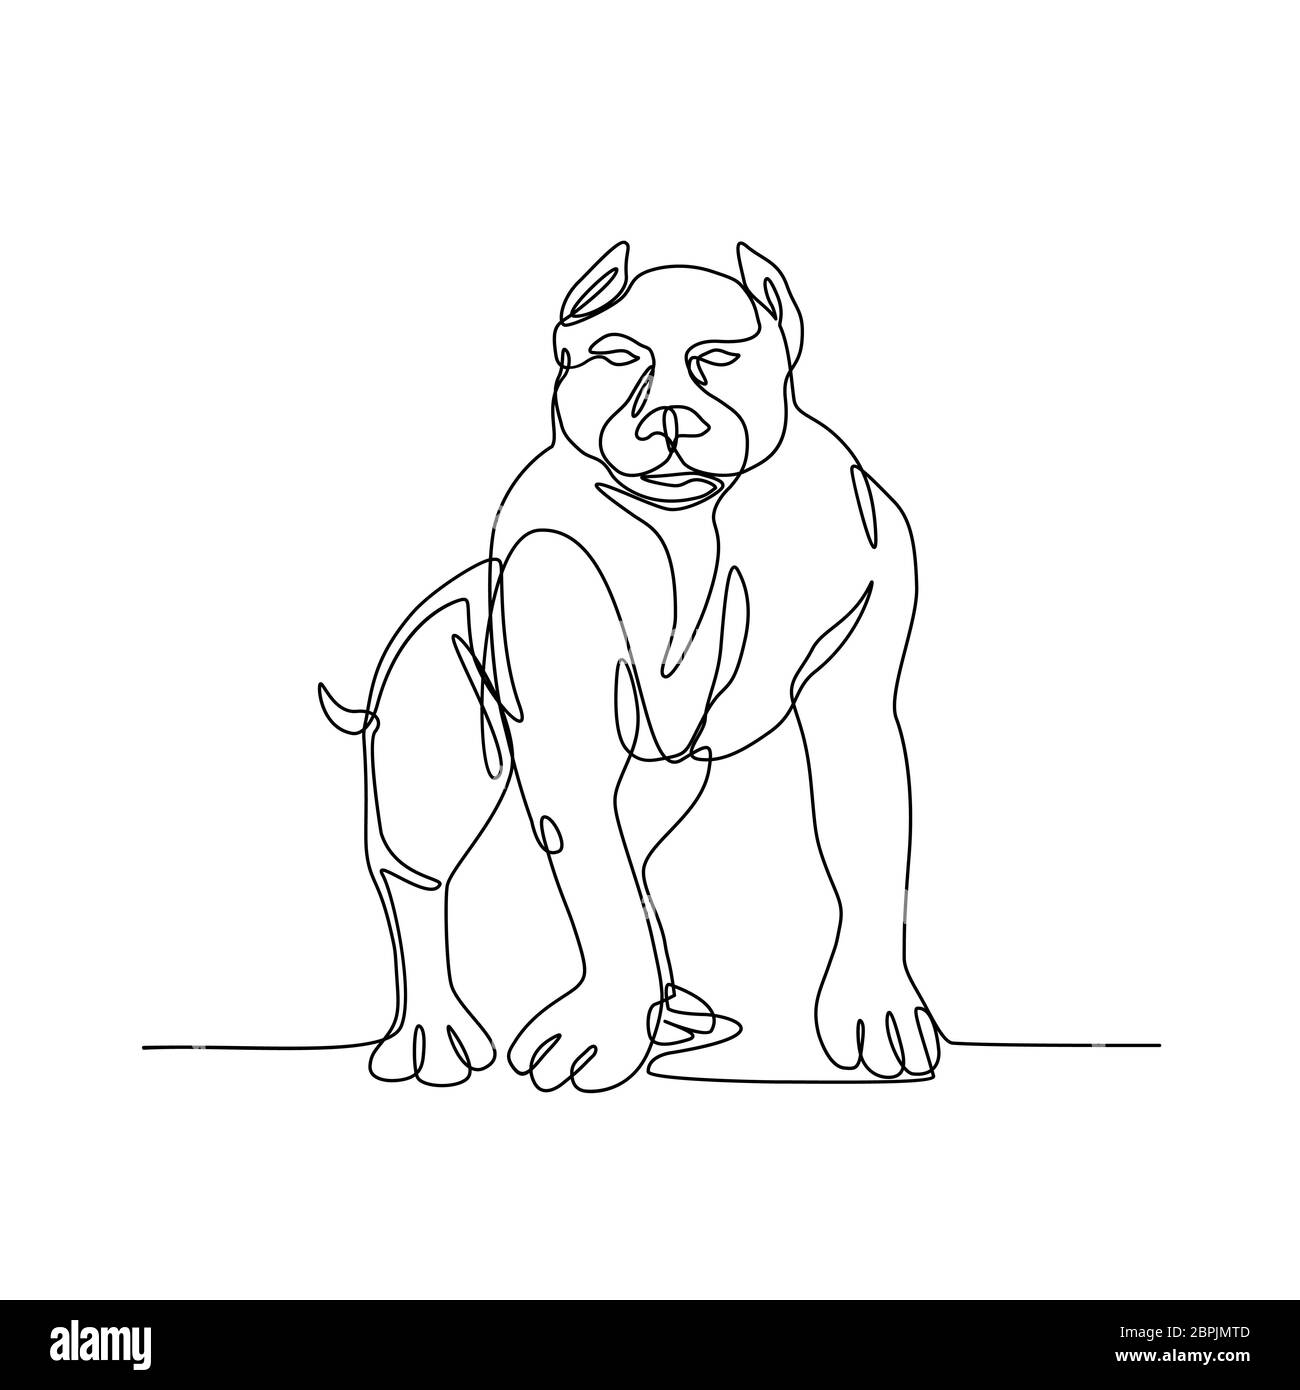 Linea continua illustrazione di un American Bully, pit bull, un tipo di cane discende da Bulldog e Terrier fatto in bianco e nero sty monolinea Foto Stock